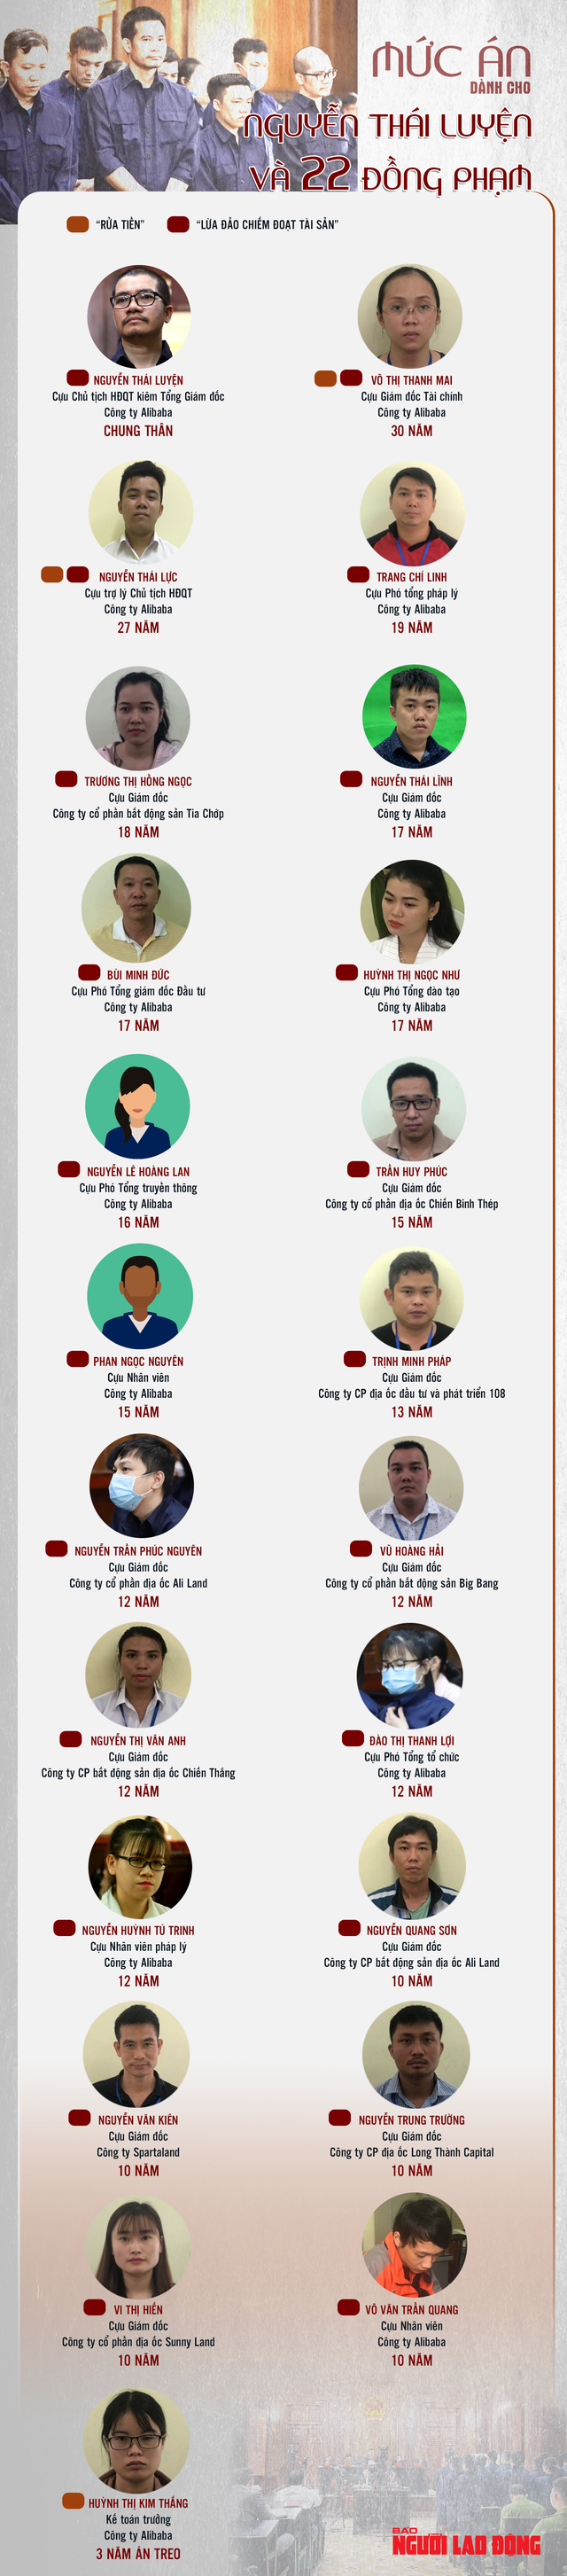 [Infographic]: Chi tiết mức án dành cho Nguyễn Thái Luyện và 22 đồng phạm - Ảnh 1.